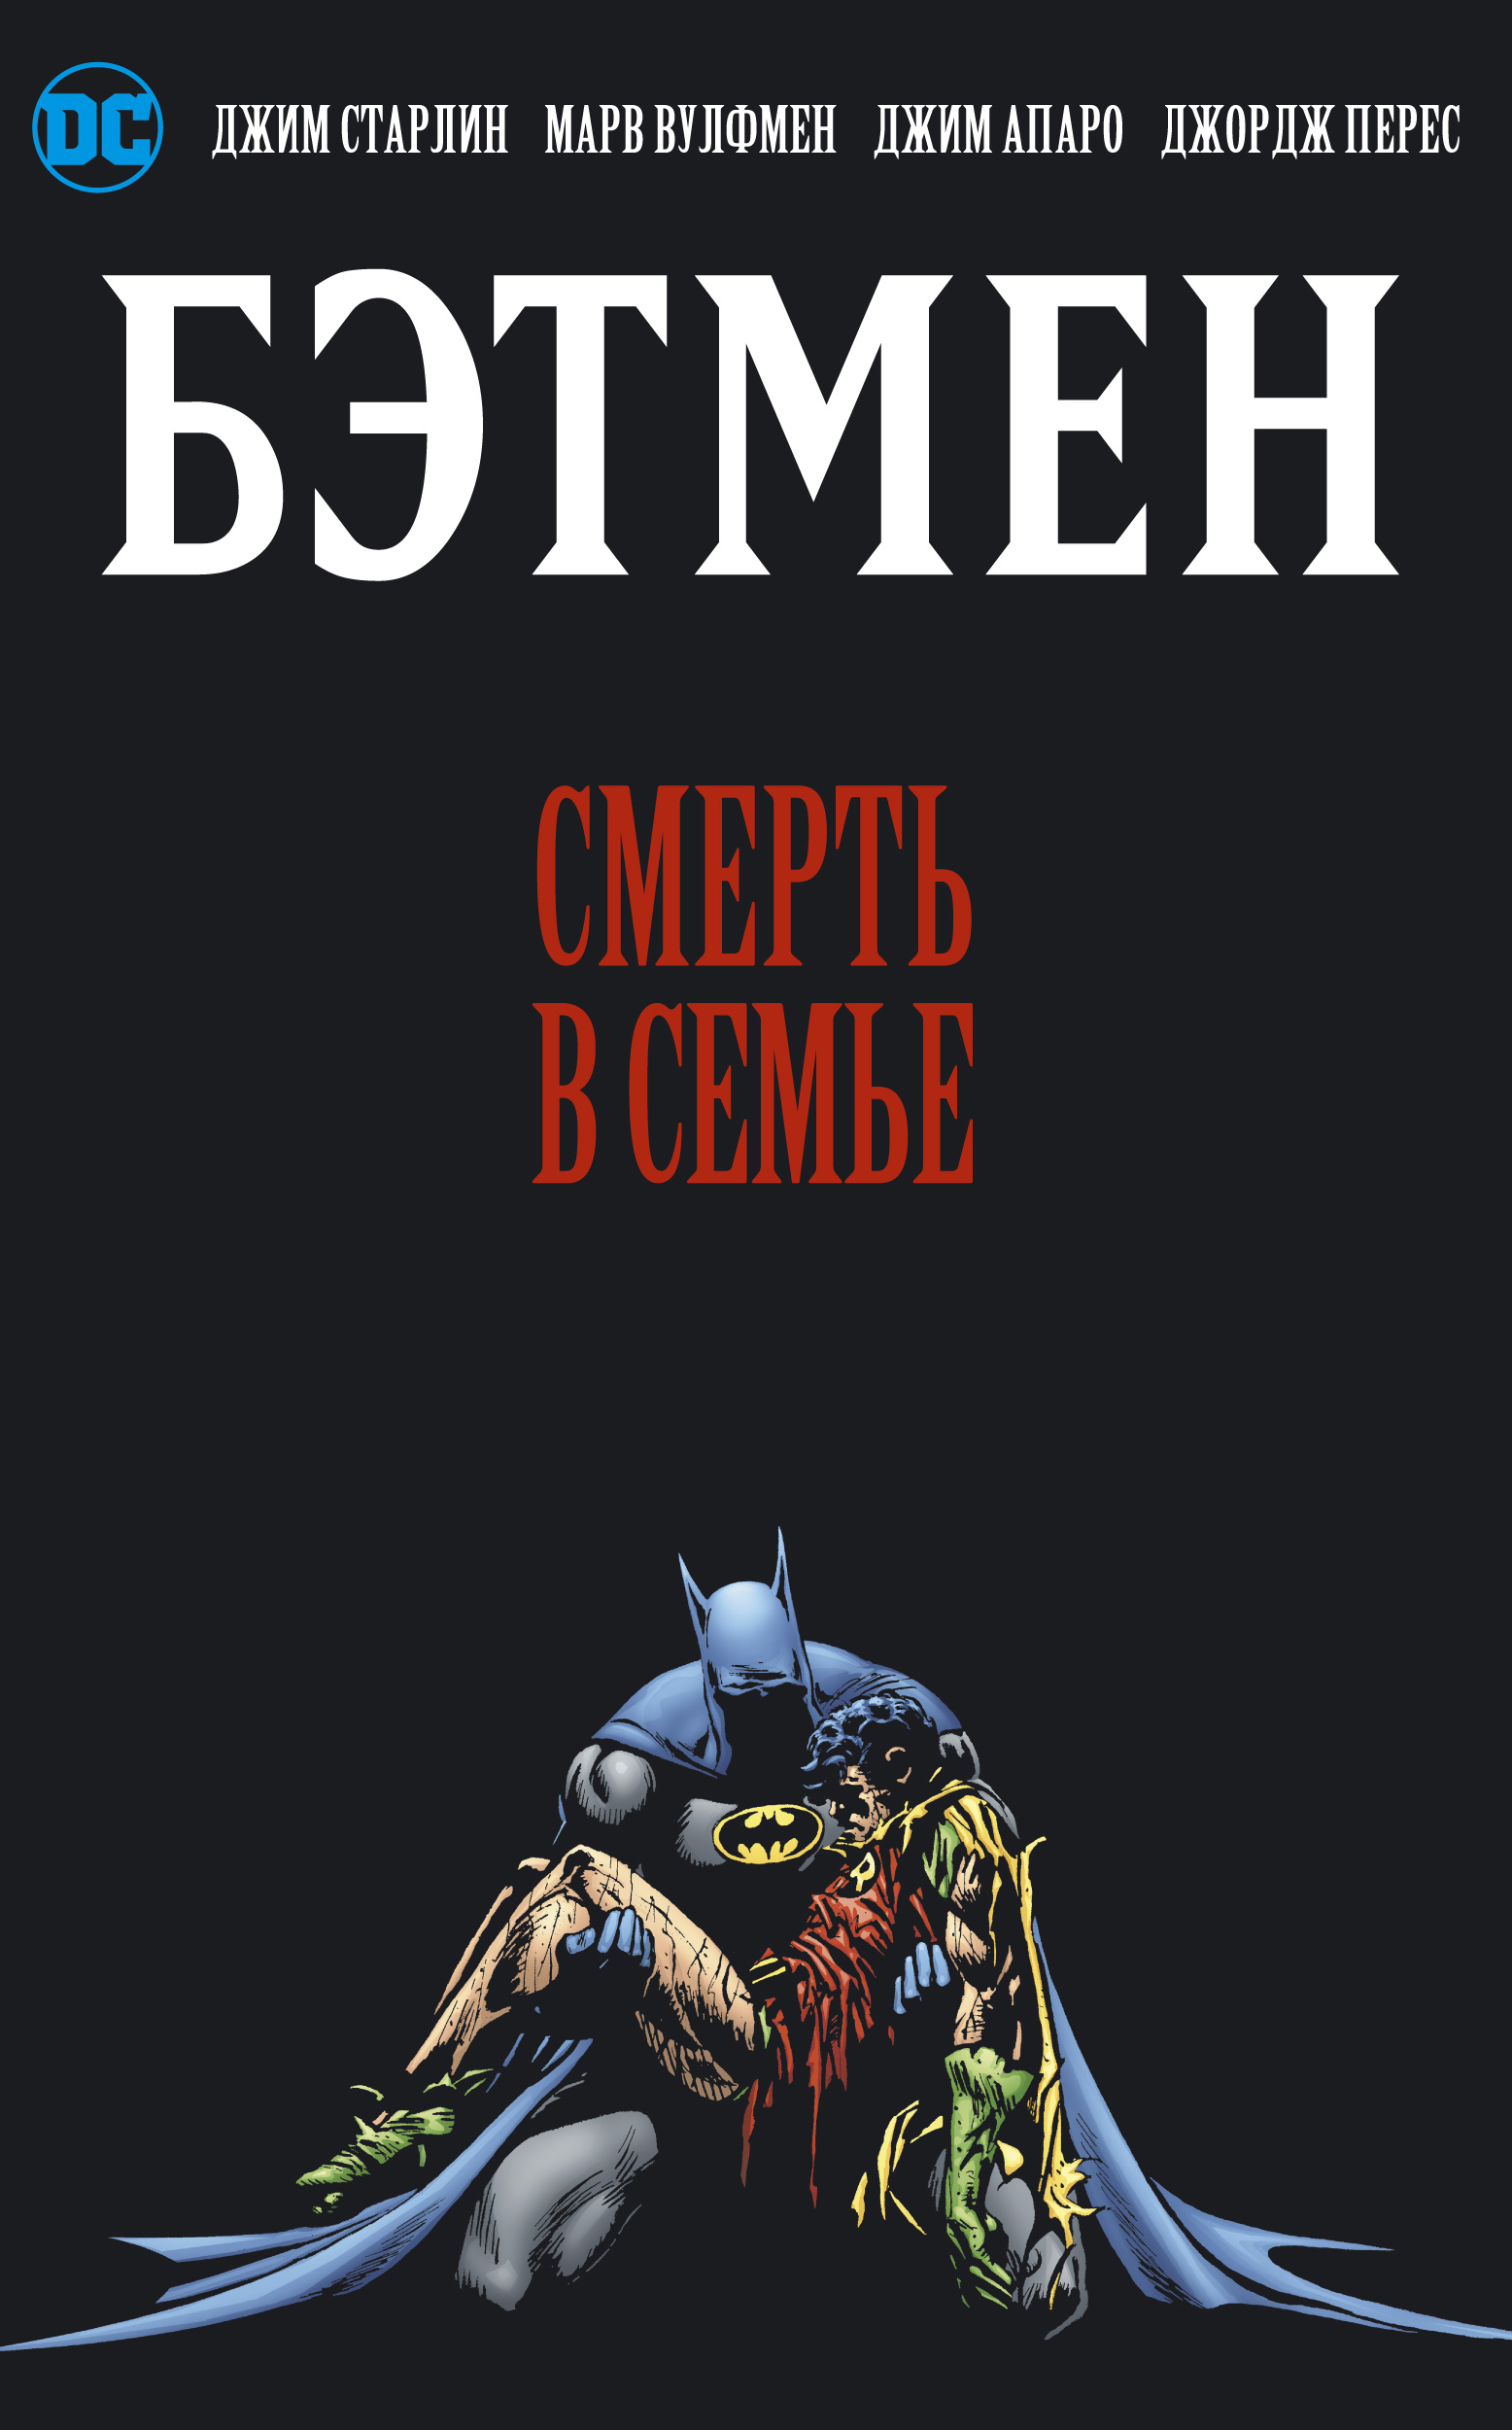 Комикс Бэтмен: Смерть в семье от 1С Интерес